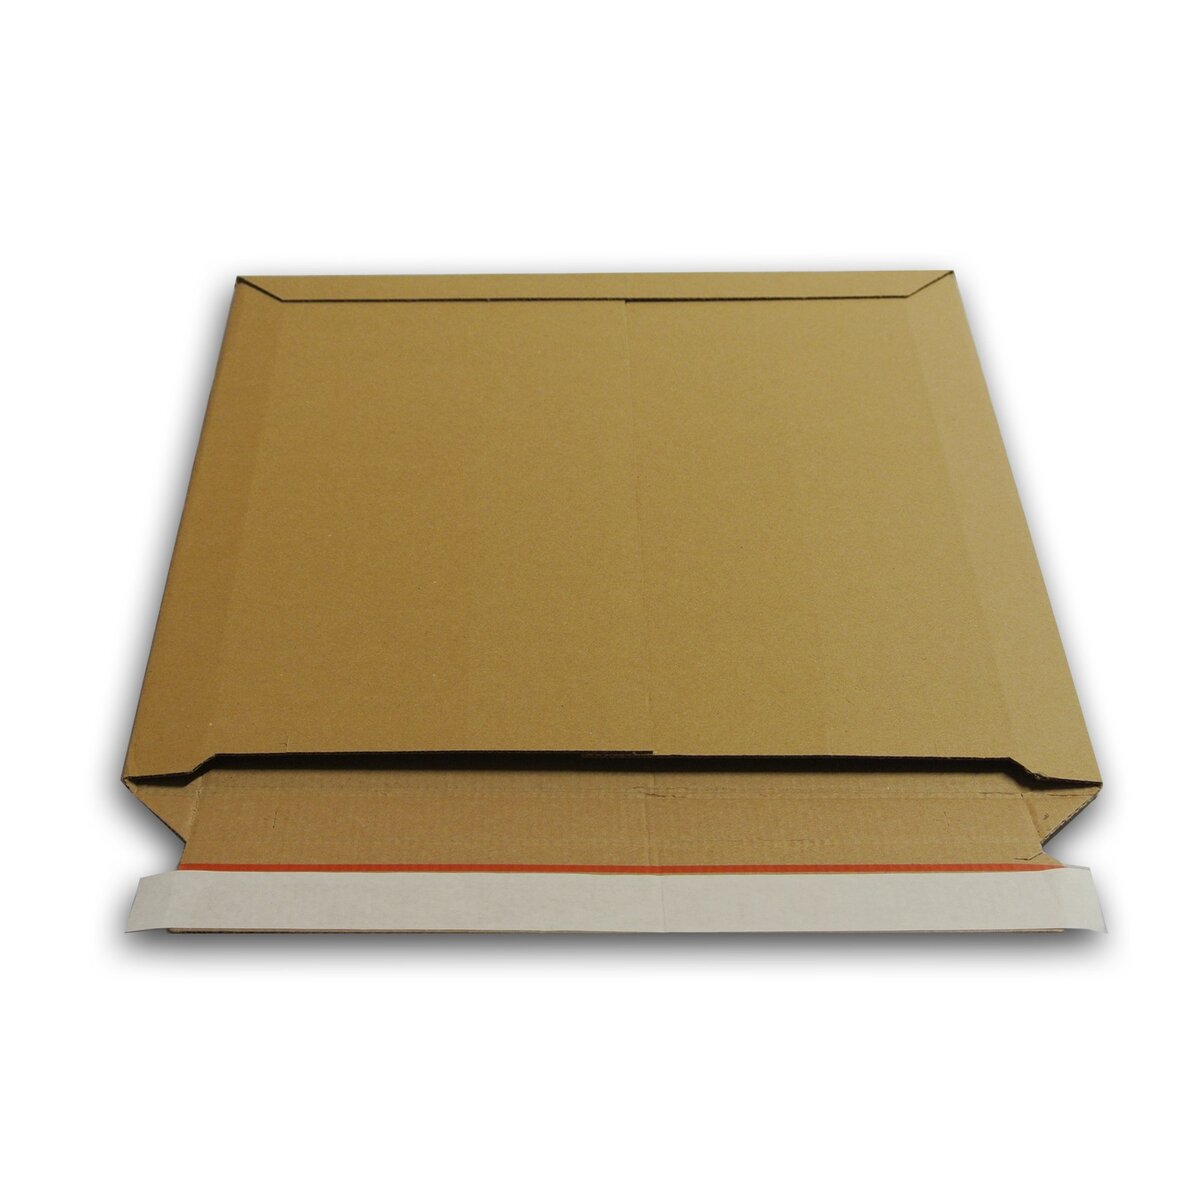 Pochette Carton Vinyle 33T, Pochette de Protection Vinyle